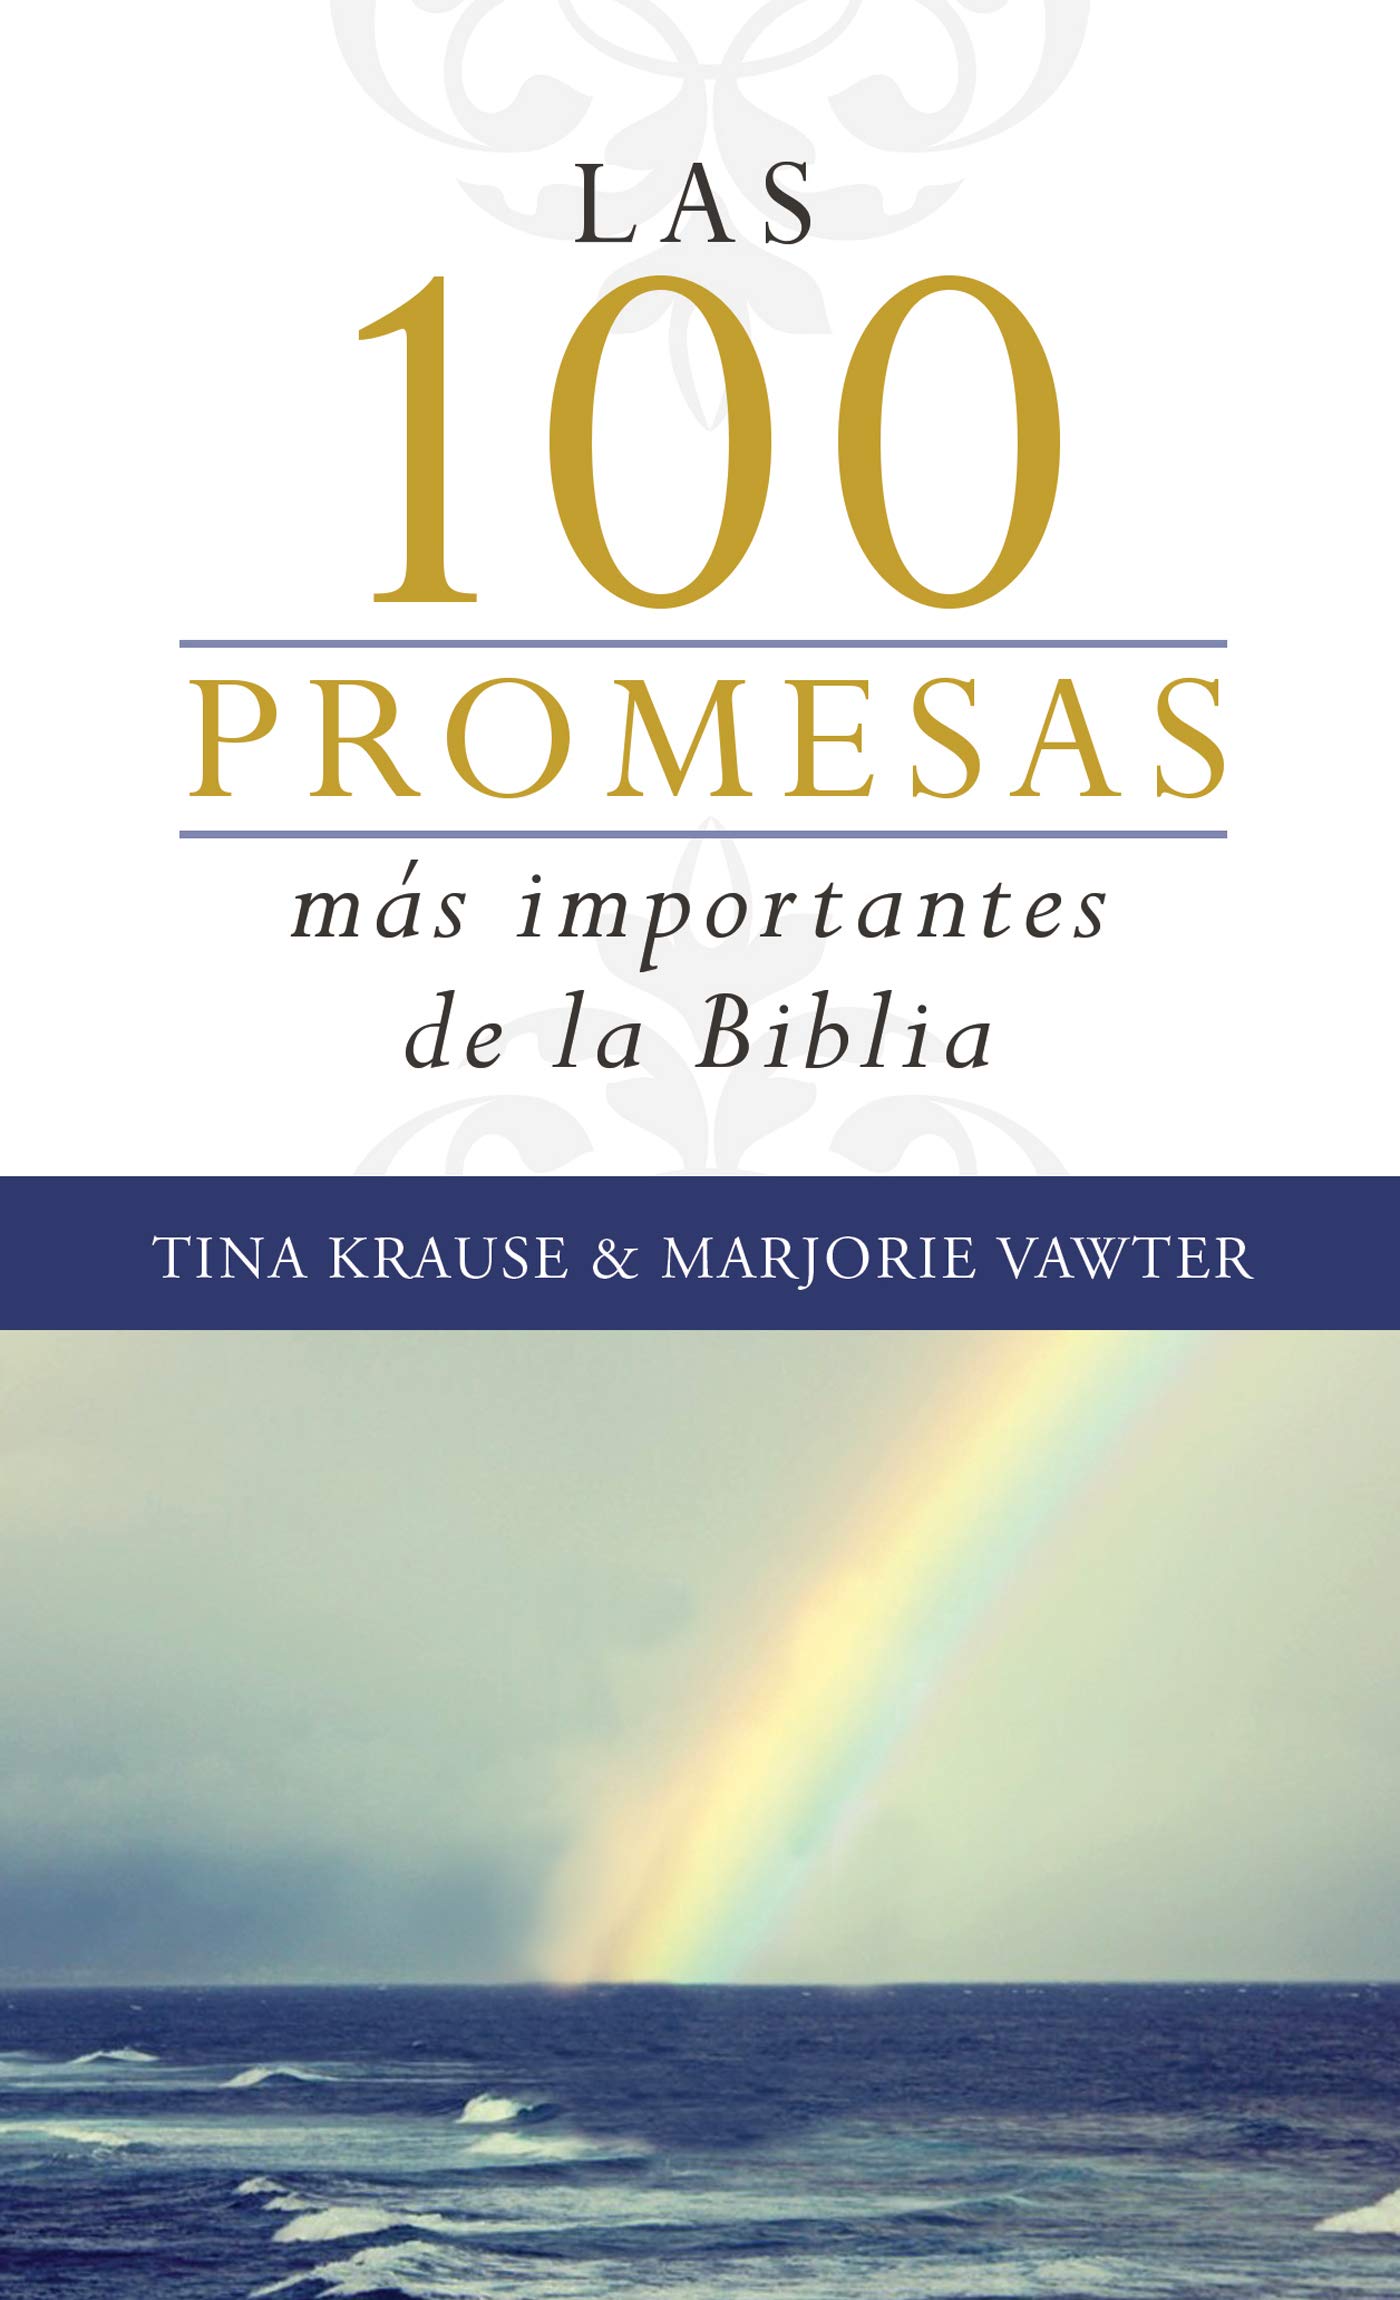 promesas de dios en la biblia reina valera 1960 pdf